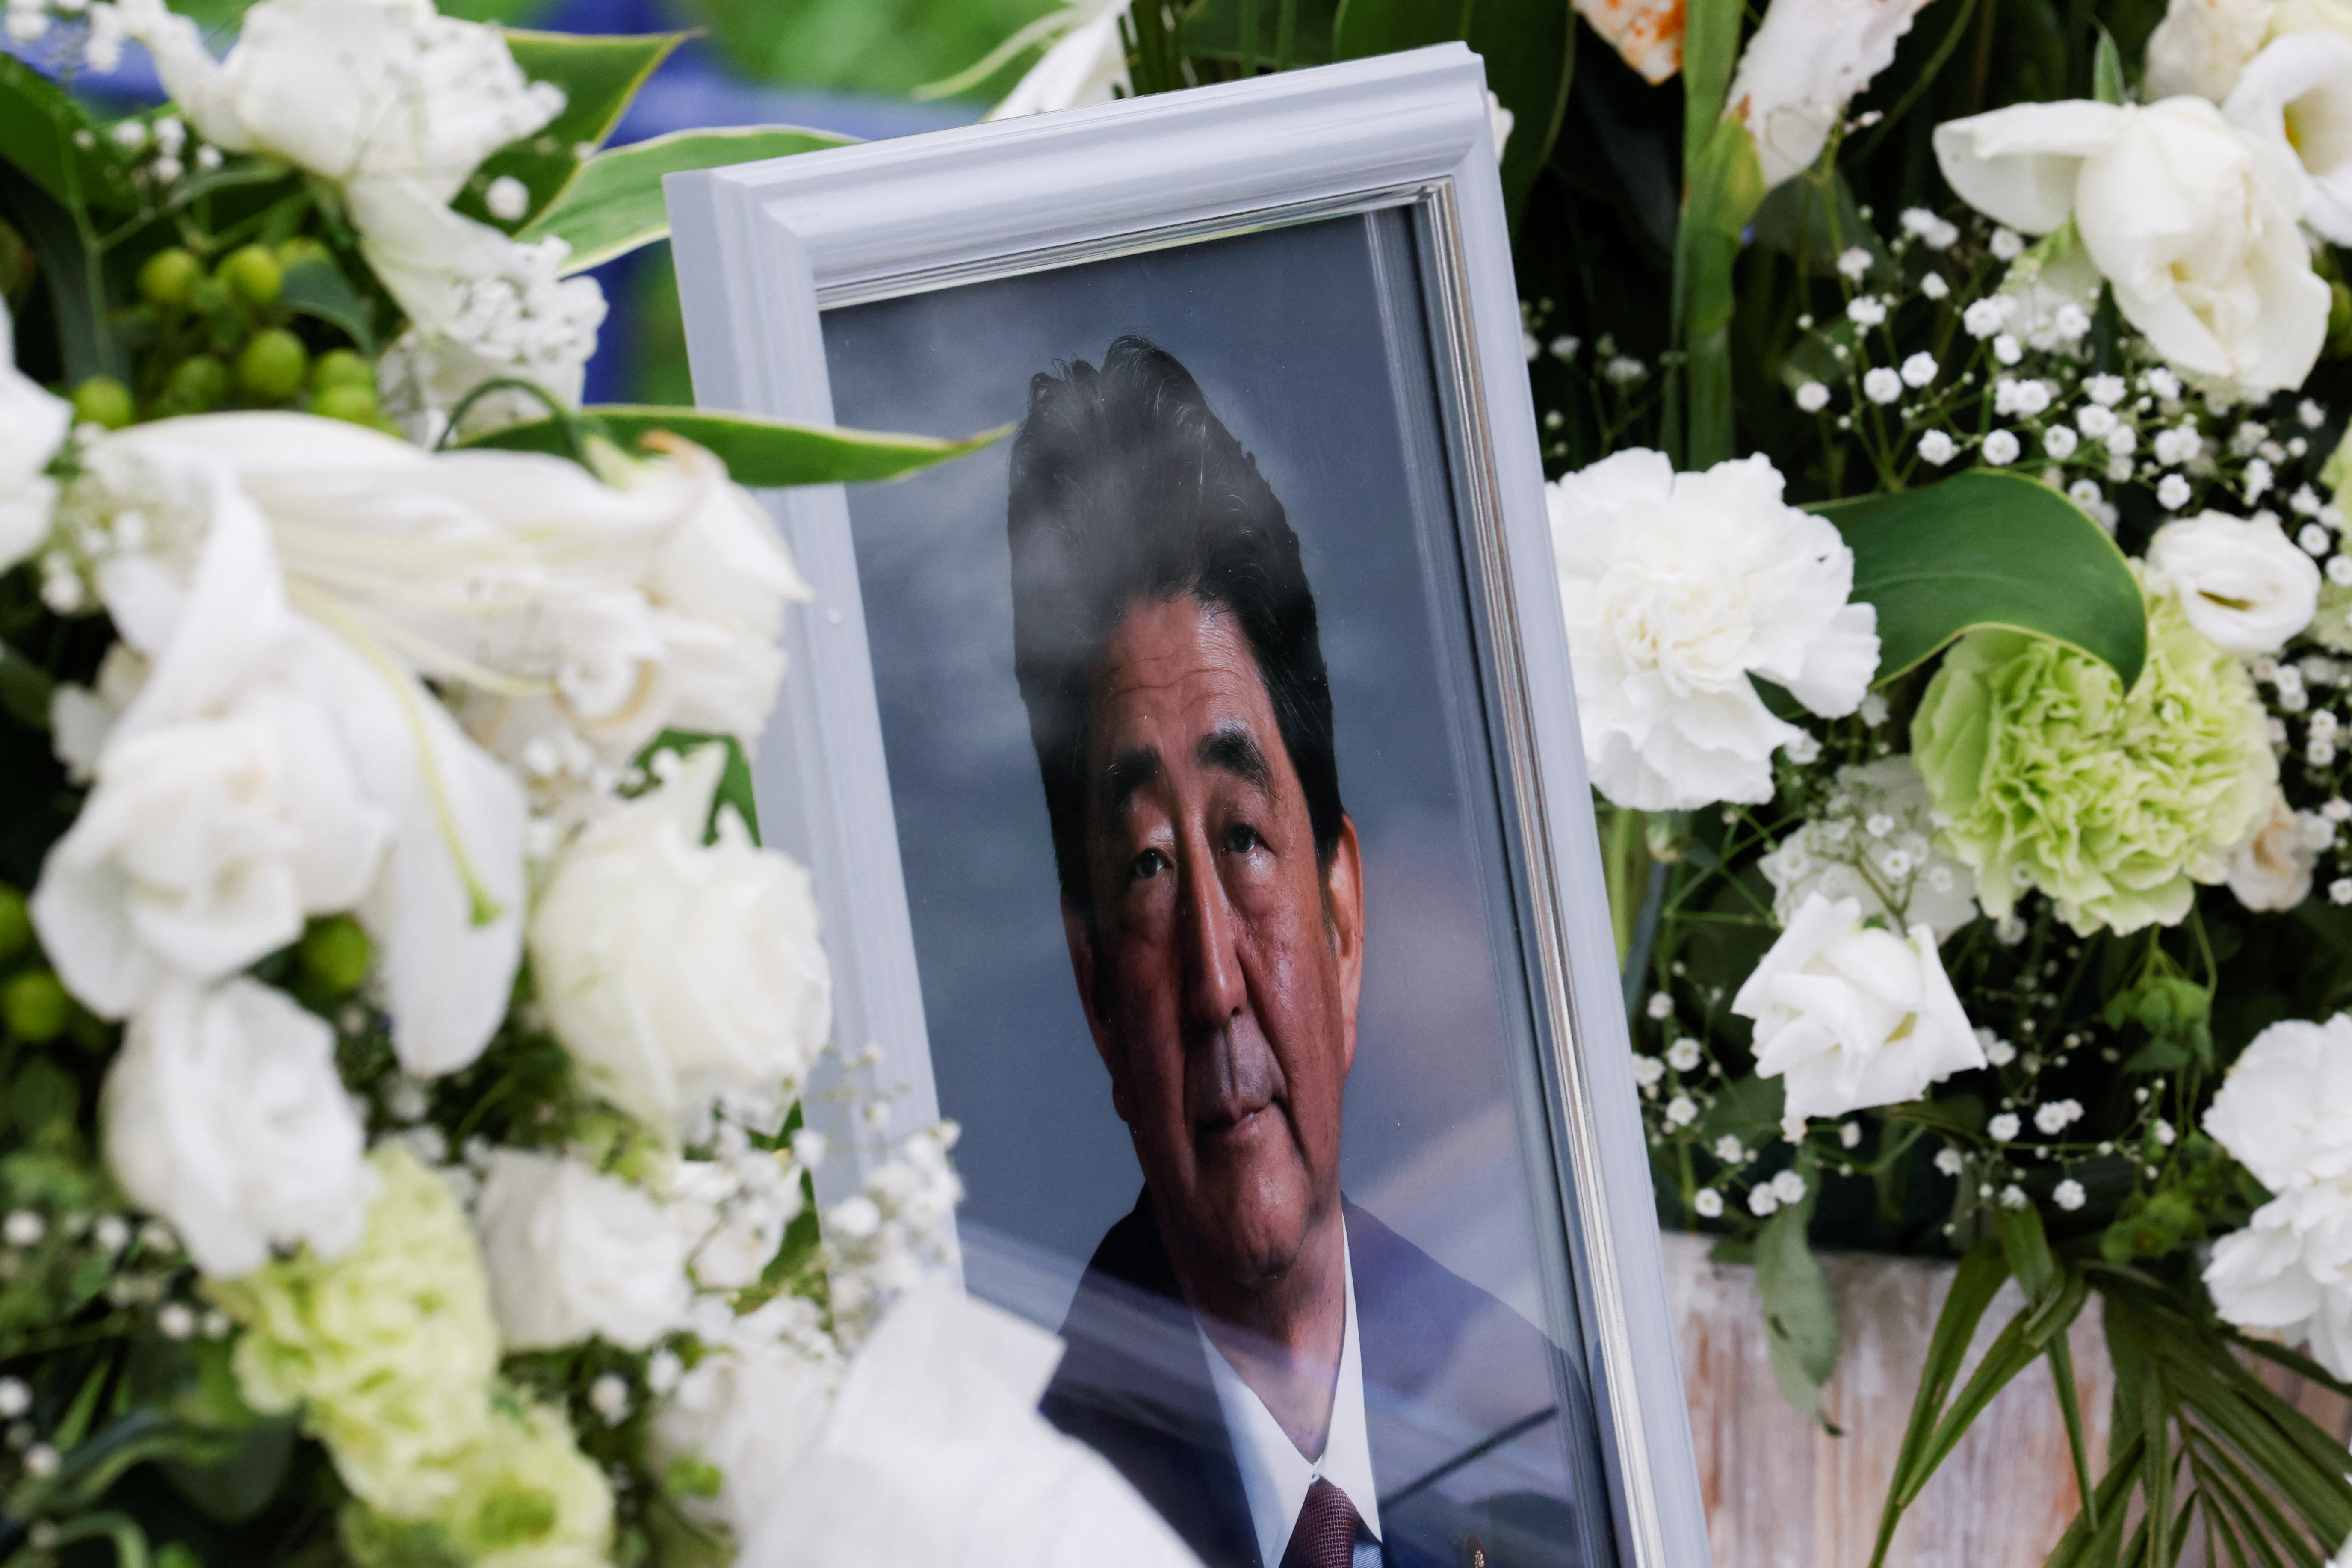 el funeral de Shinzo Abe